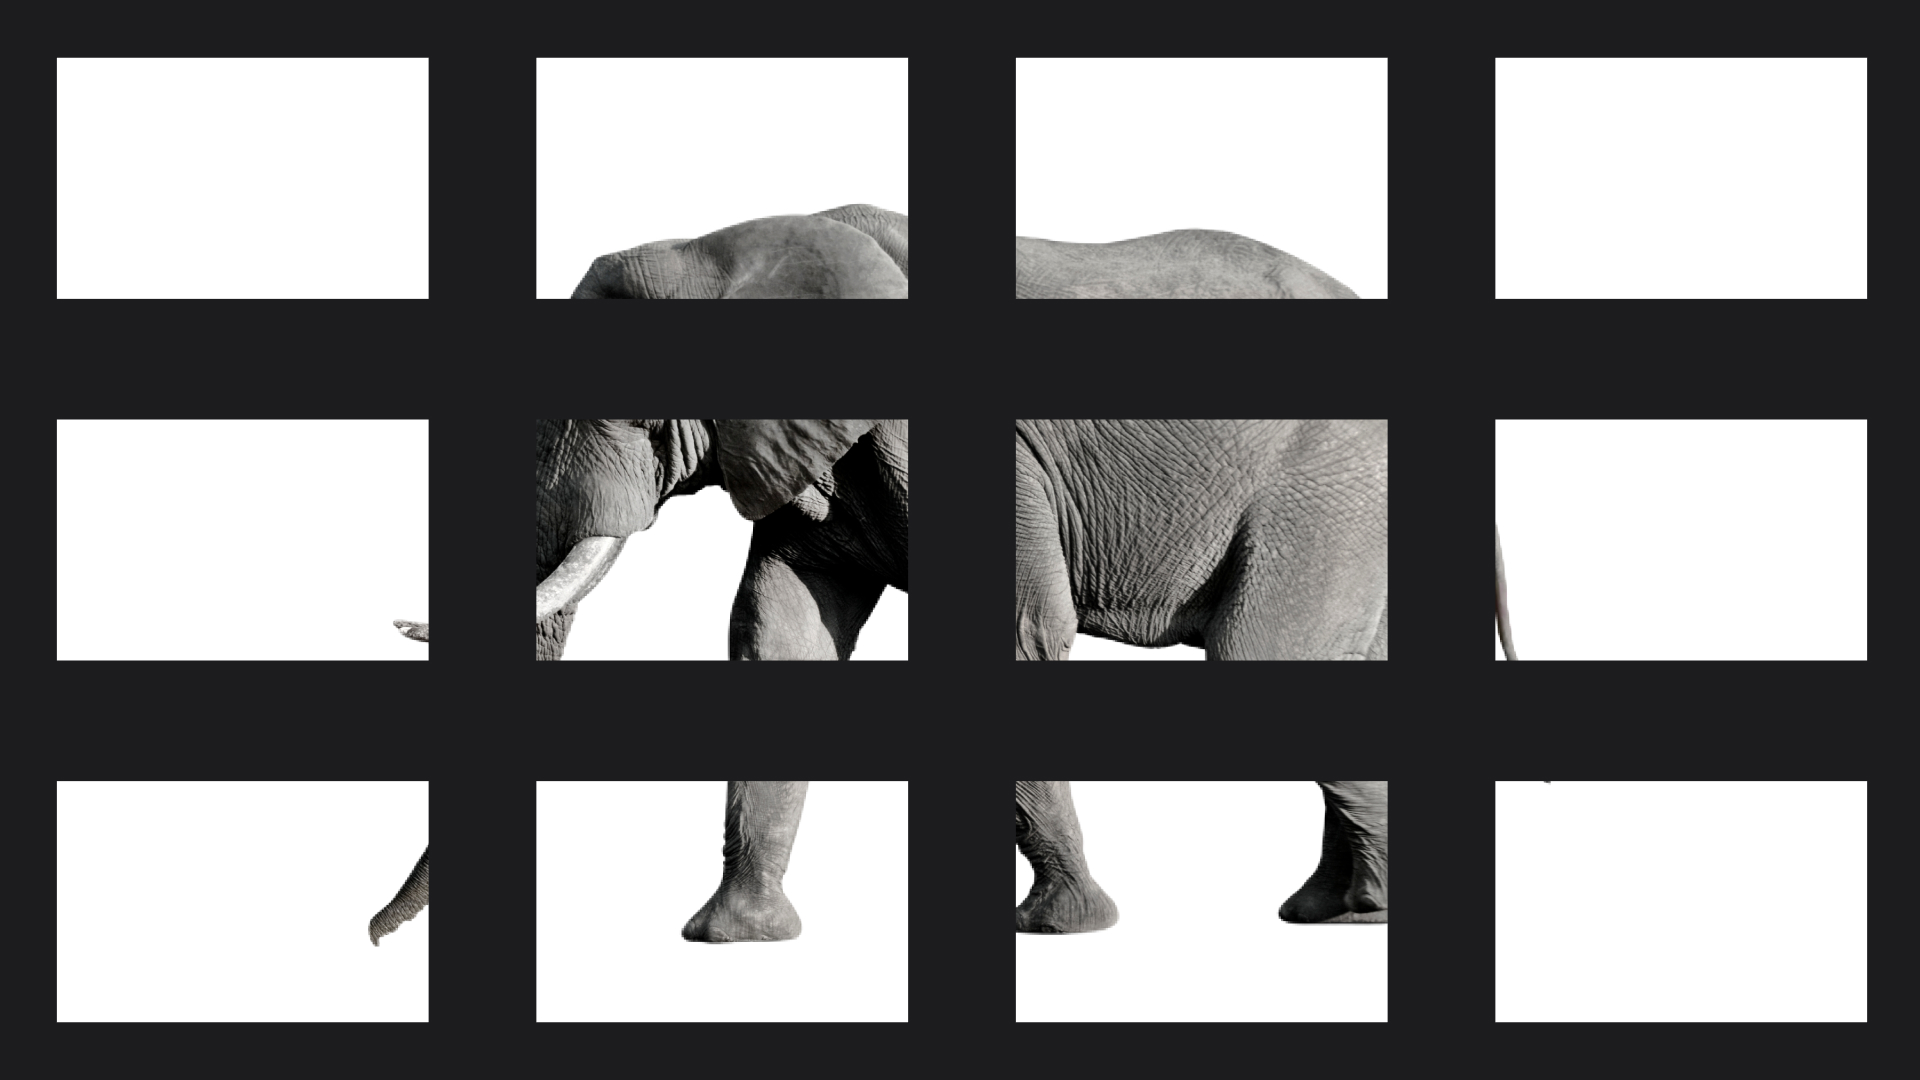 Ziel der Präsentation: hinter Elefant steckt eine Botschaft